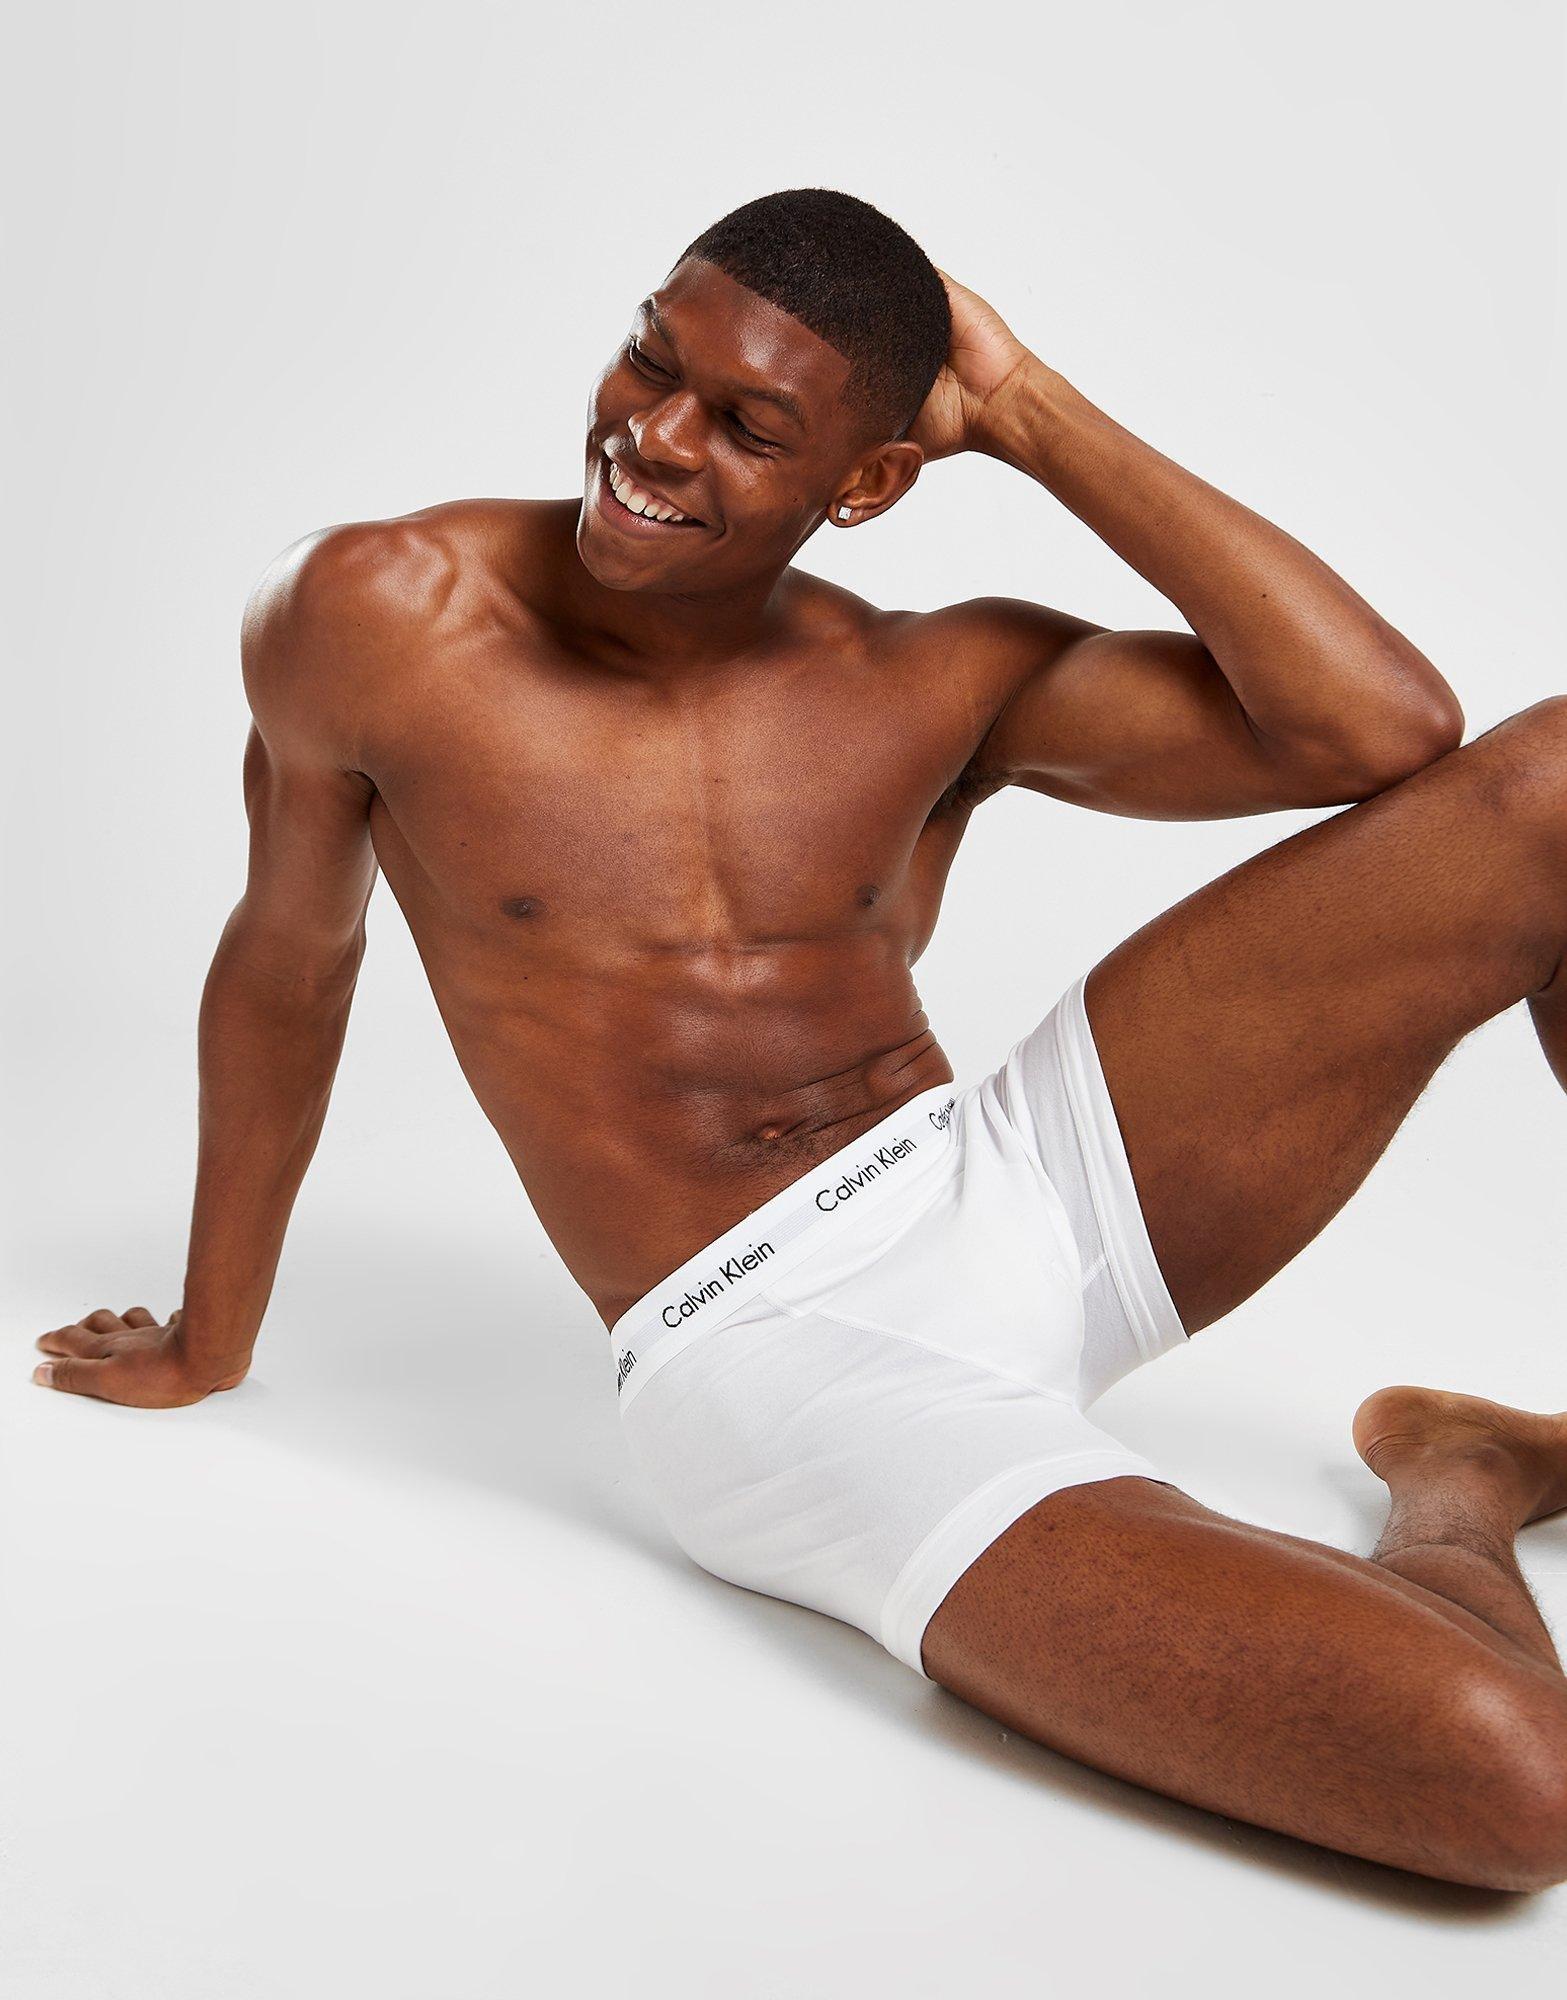 Grey Calvin Klein Underwear - JD Sports Global